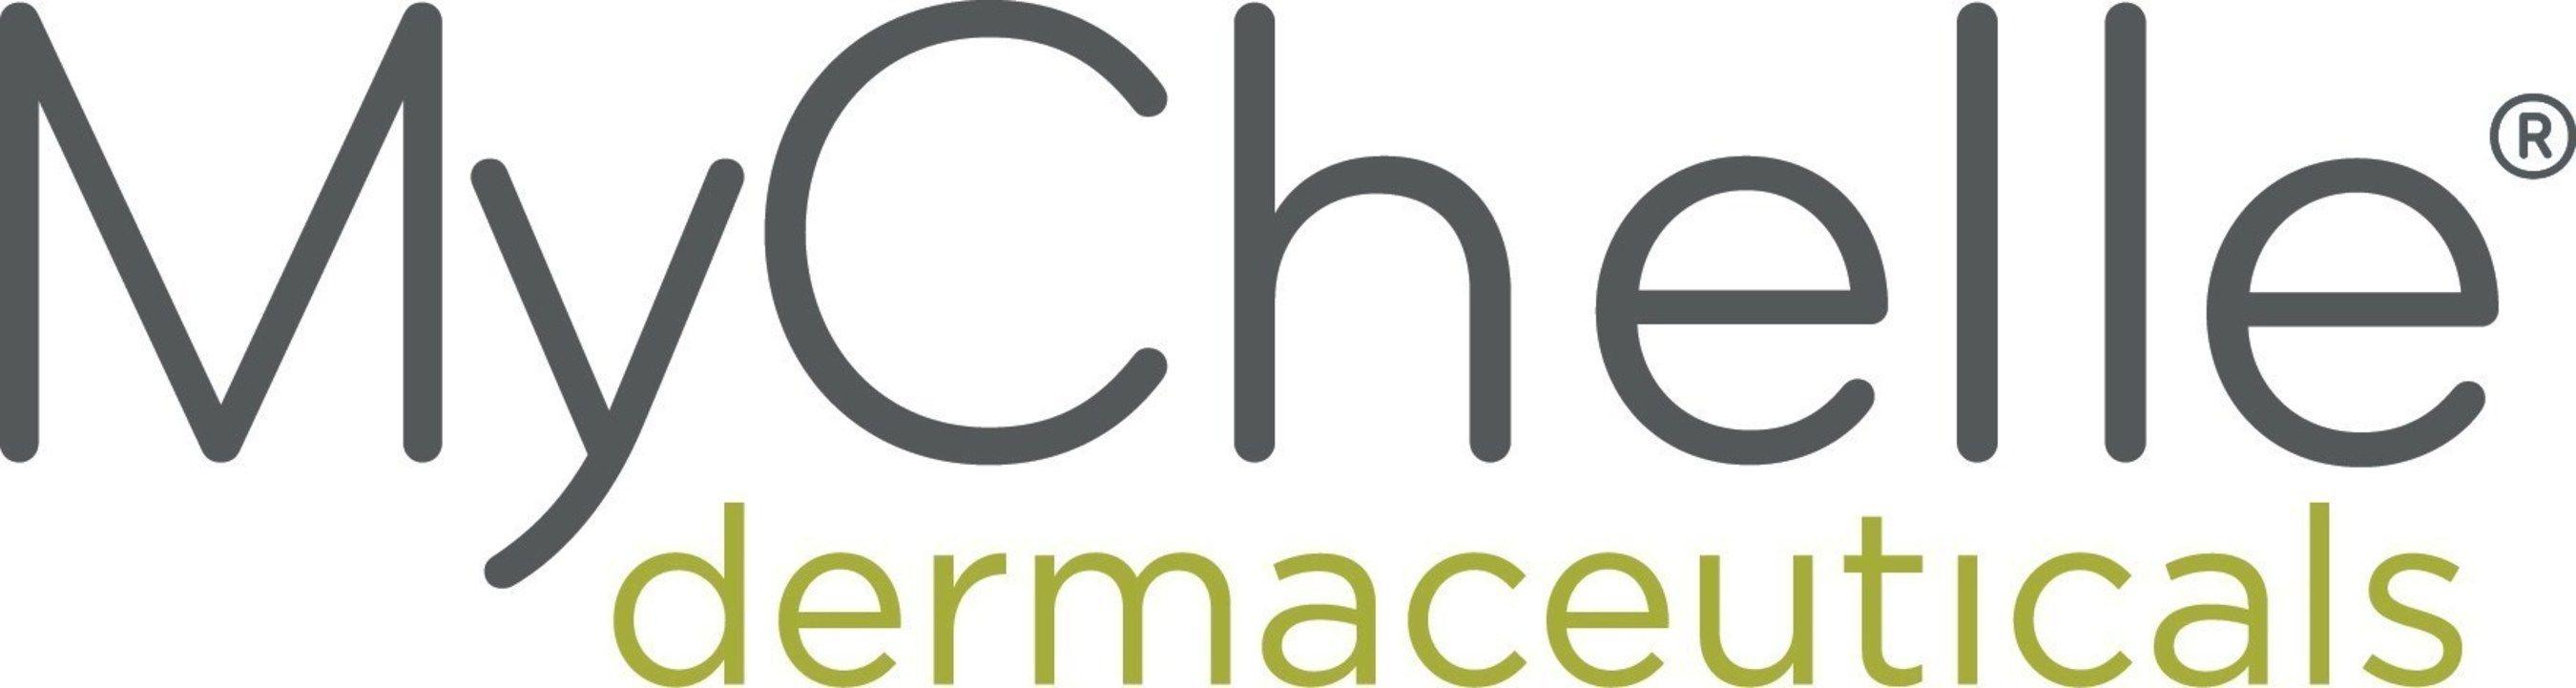 ULTA Beauty Logo - MyChelle Dermaceuticals Announces New Distribution Partnership